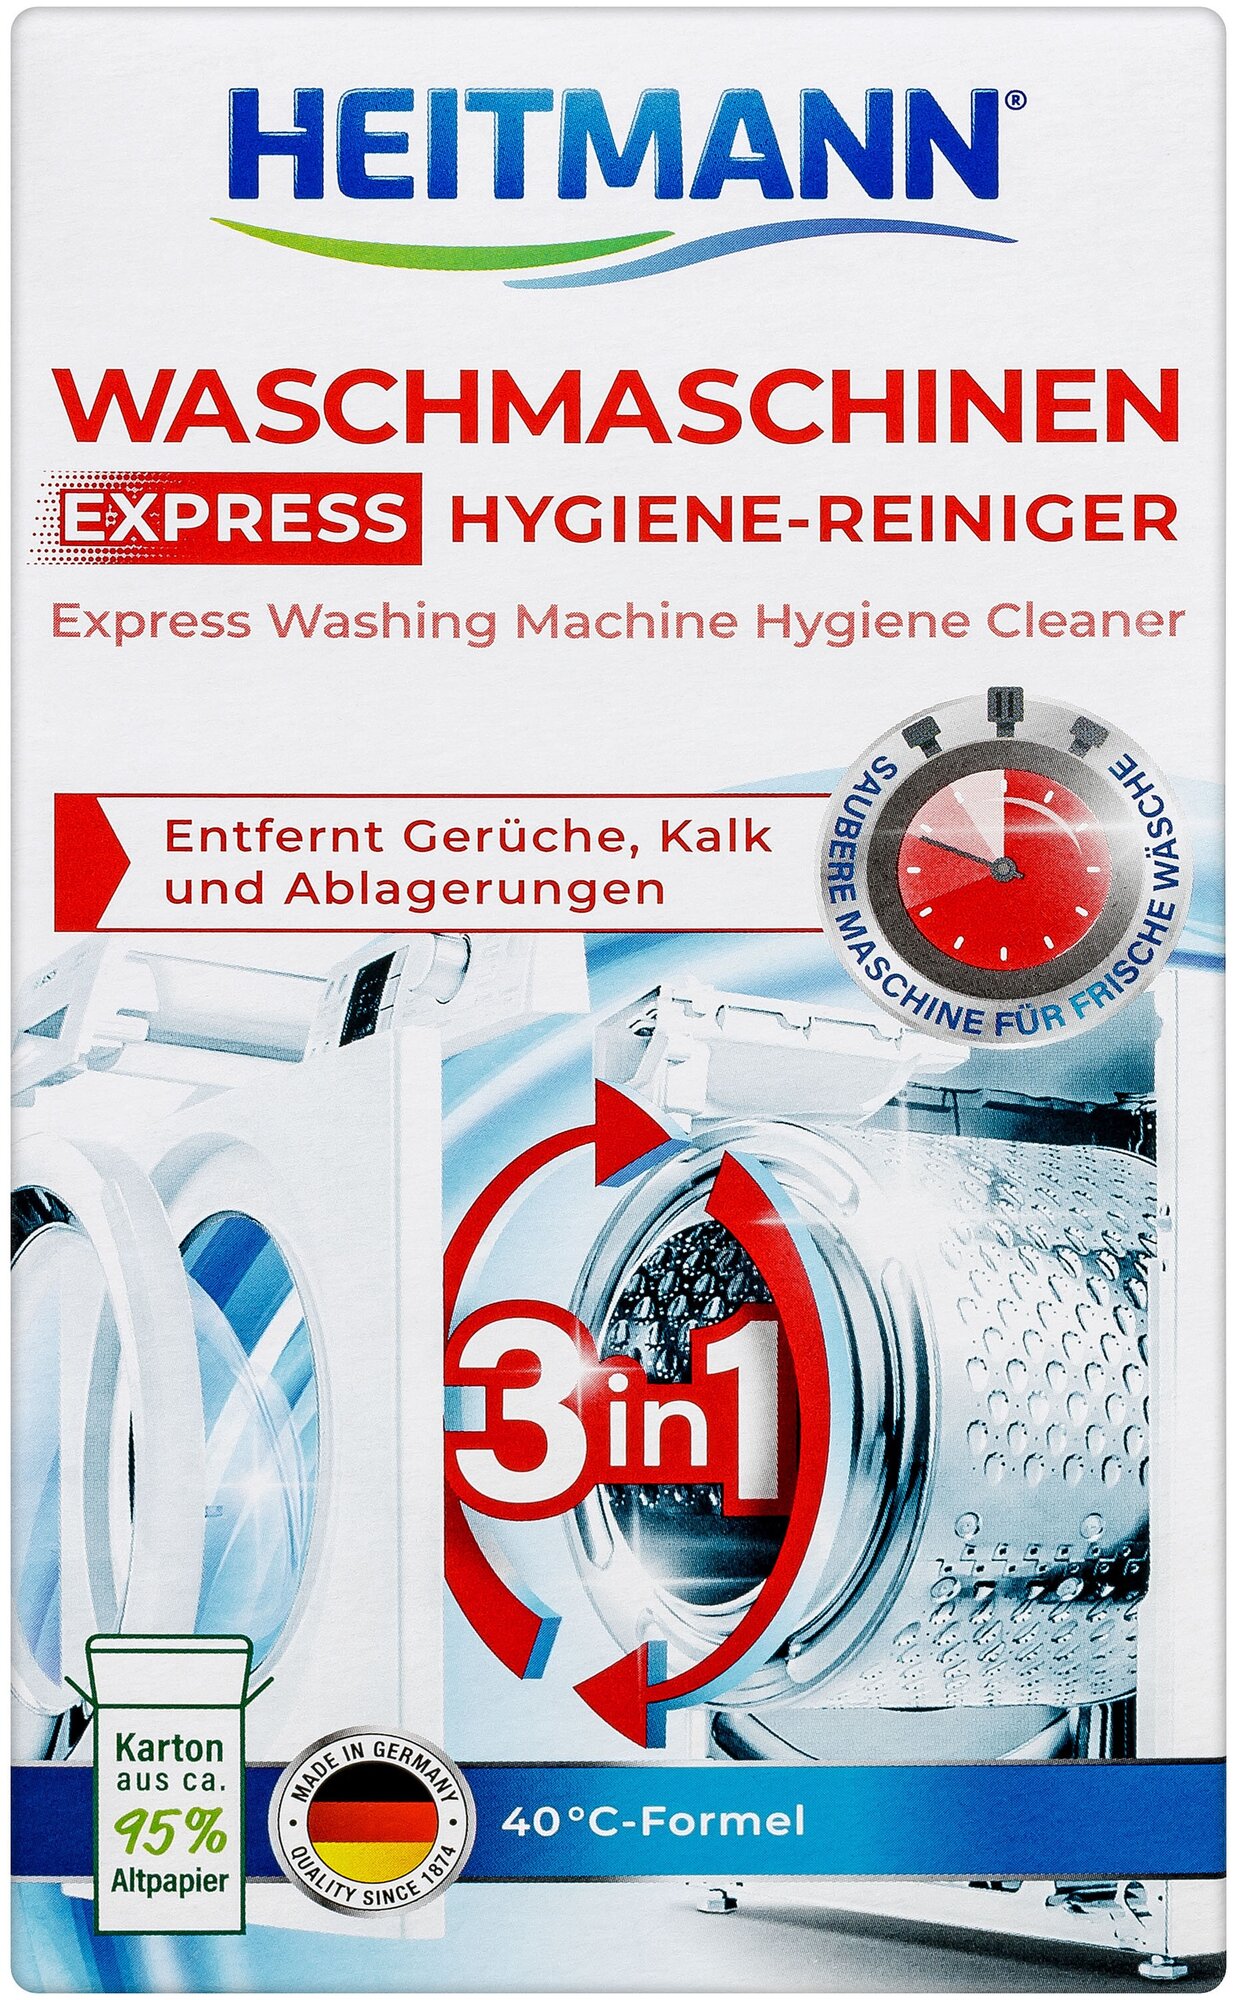 Экспресс-очиститель для стиральных машин HEITMANN Waschmaschinen Hygiene-Reiniger Express (250г)